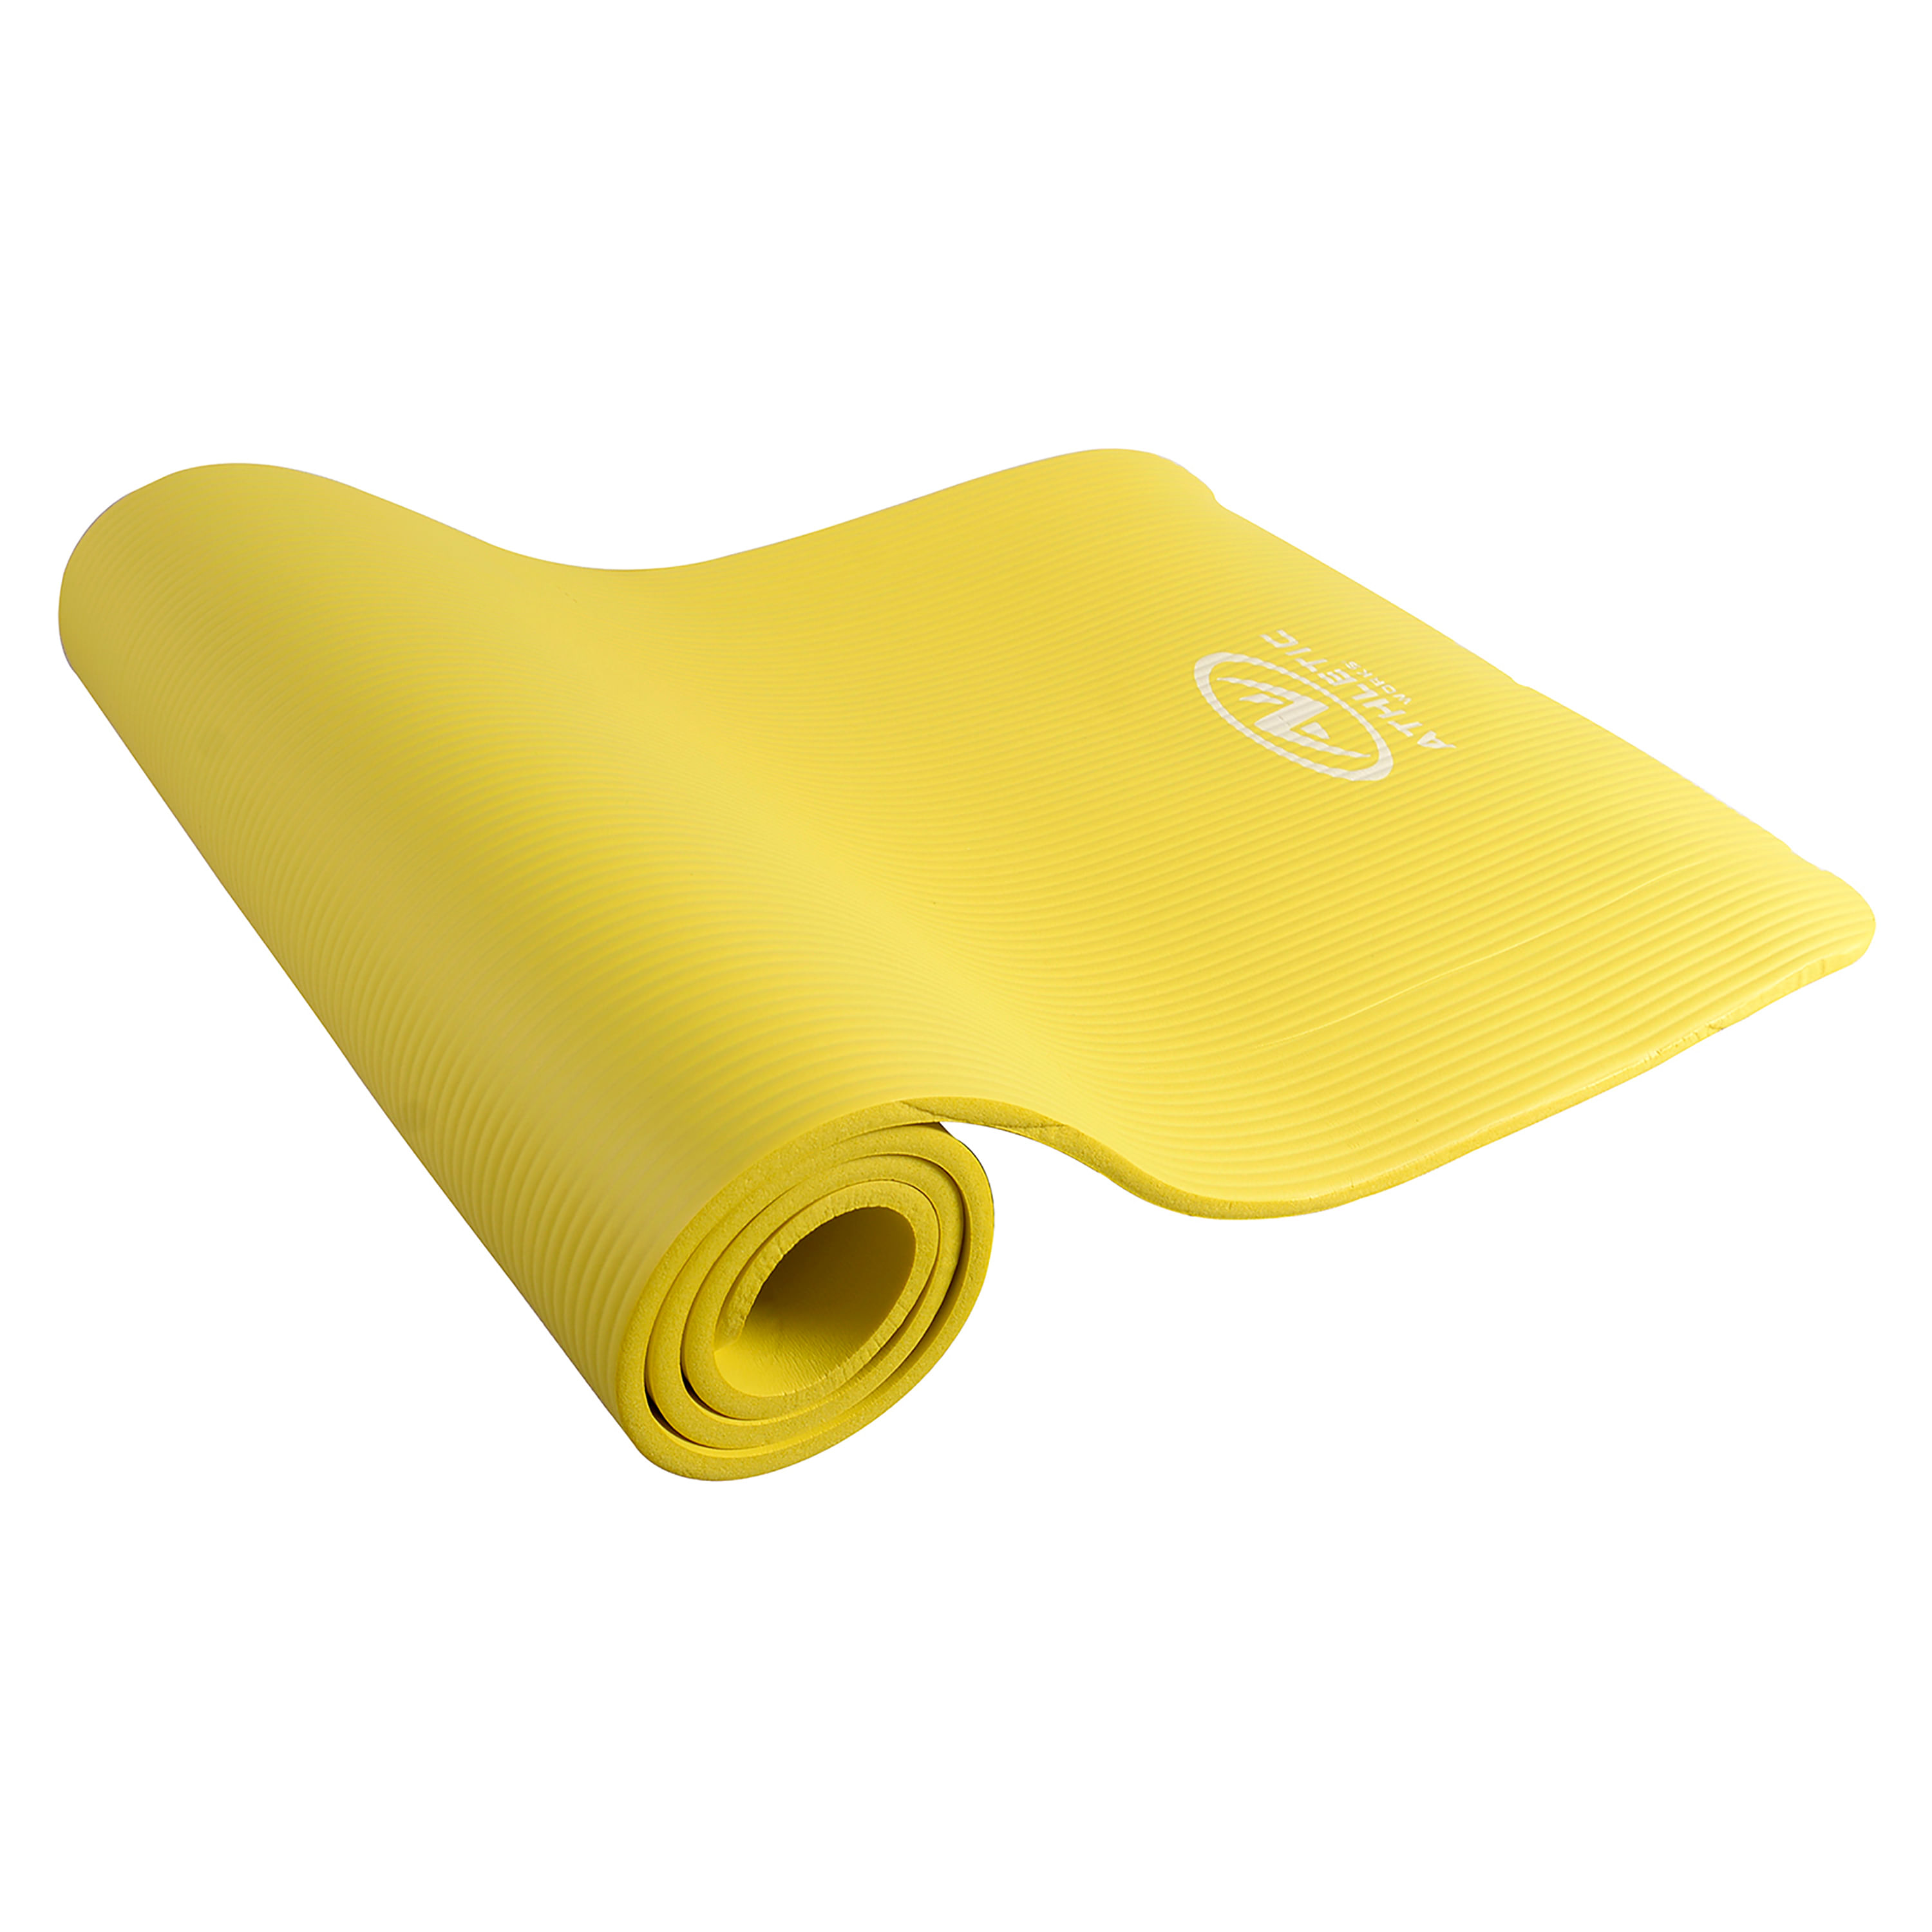 Alfombra de yoga, grande, de alta calidad (2.15 x 1.5 m, grosor de 8 mm)  muy acolchada y cómoda, no tóxica, antideslizante, para hacer ejercicio